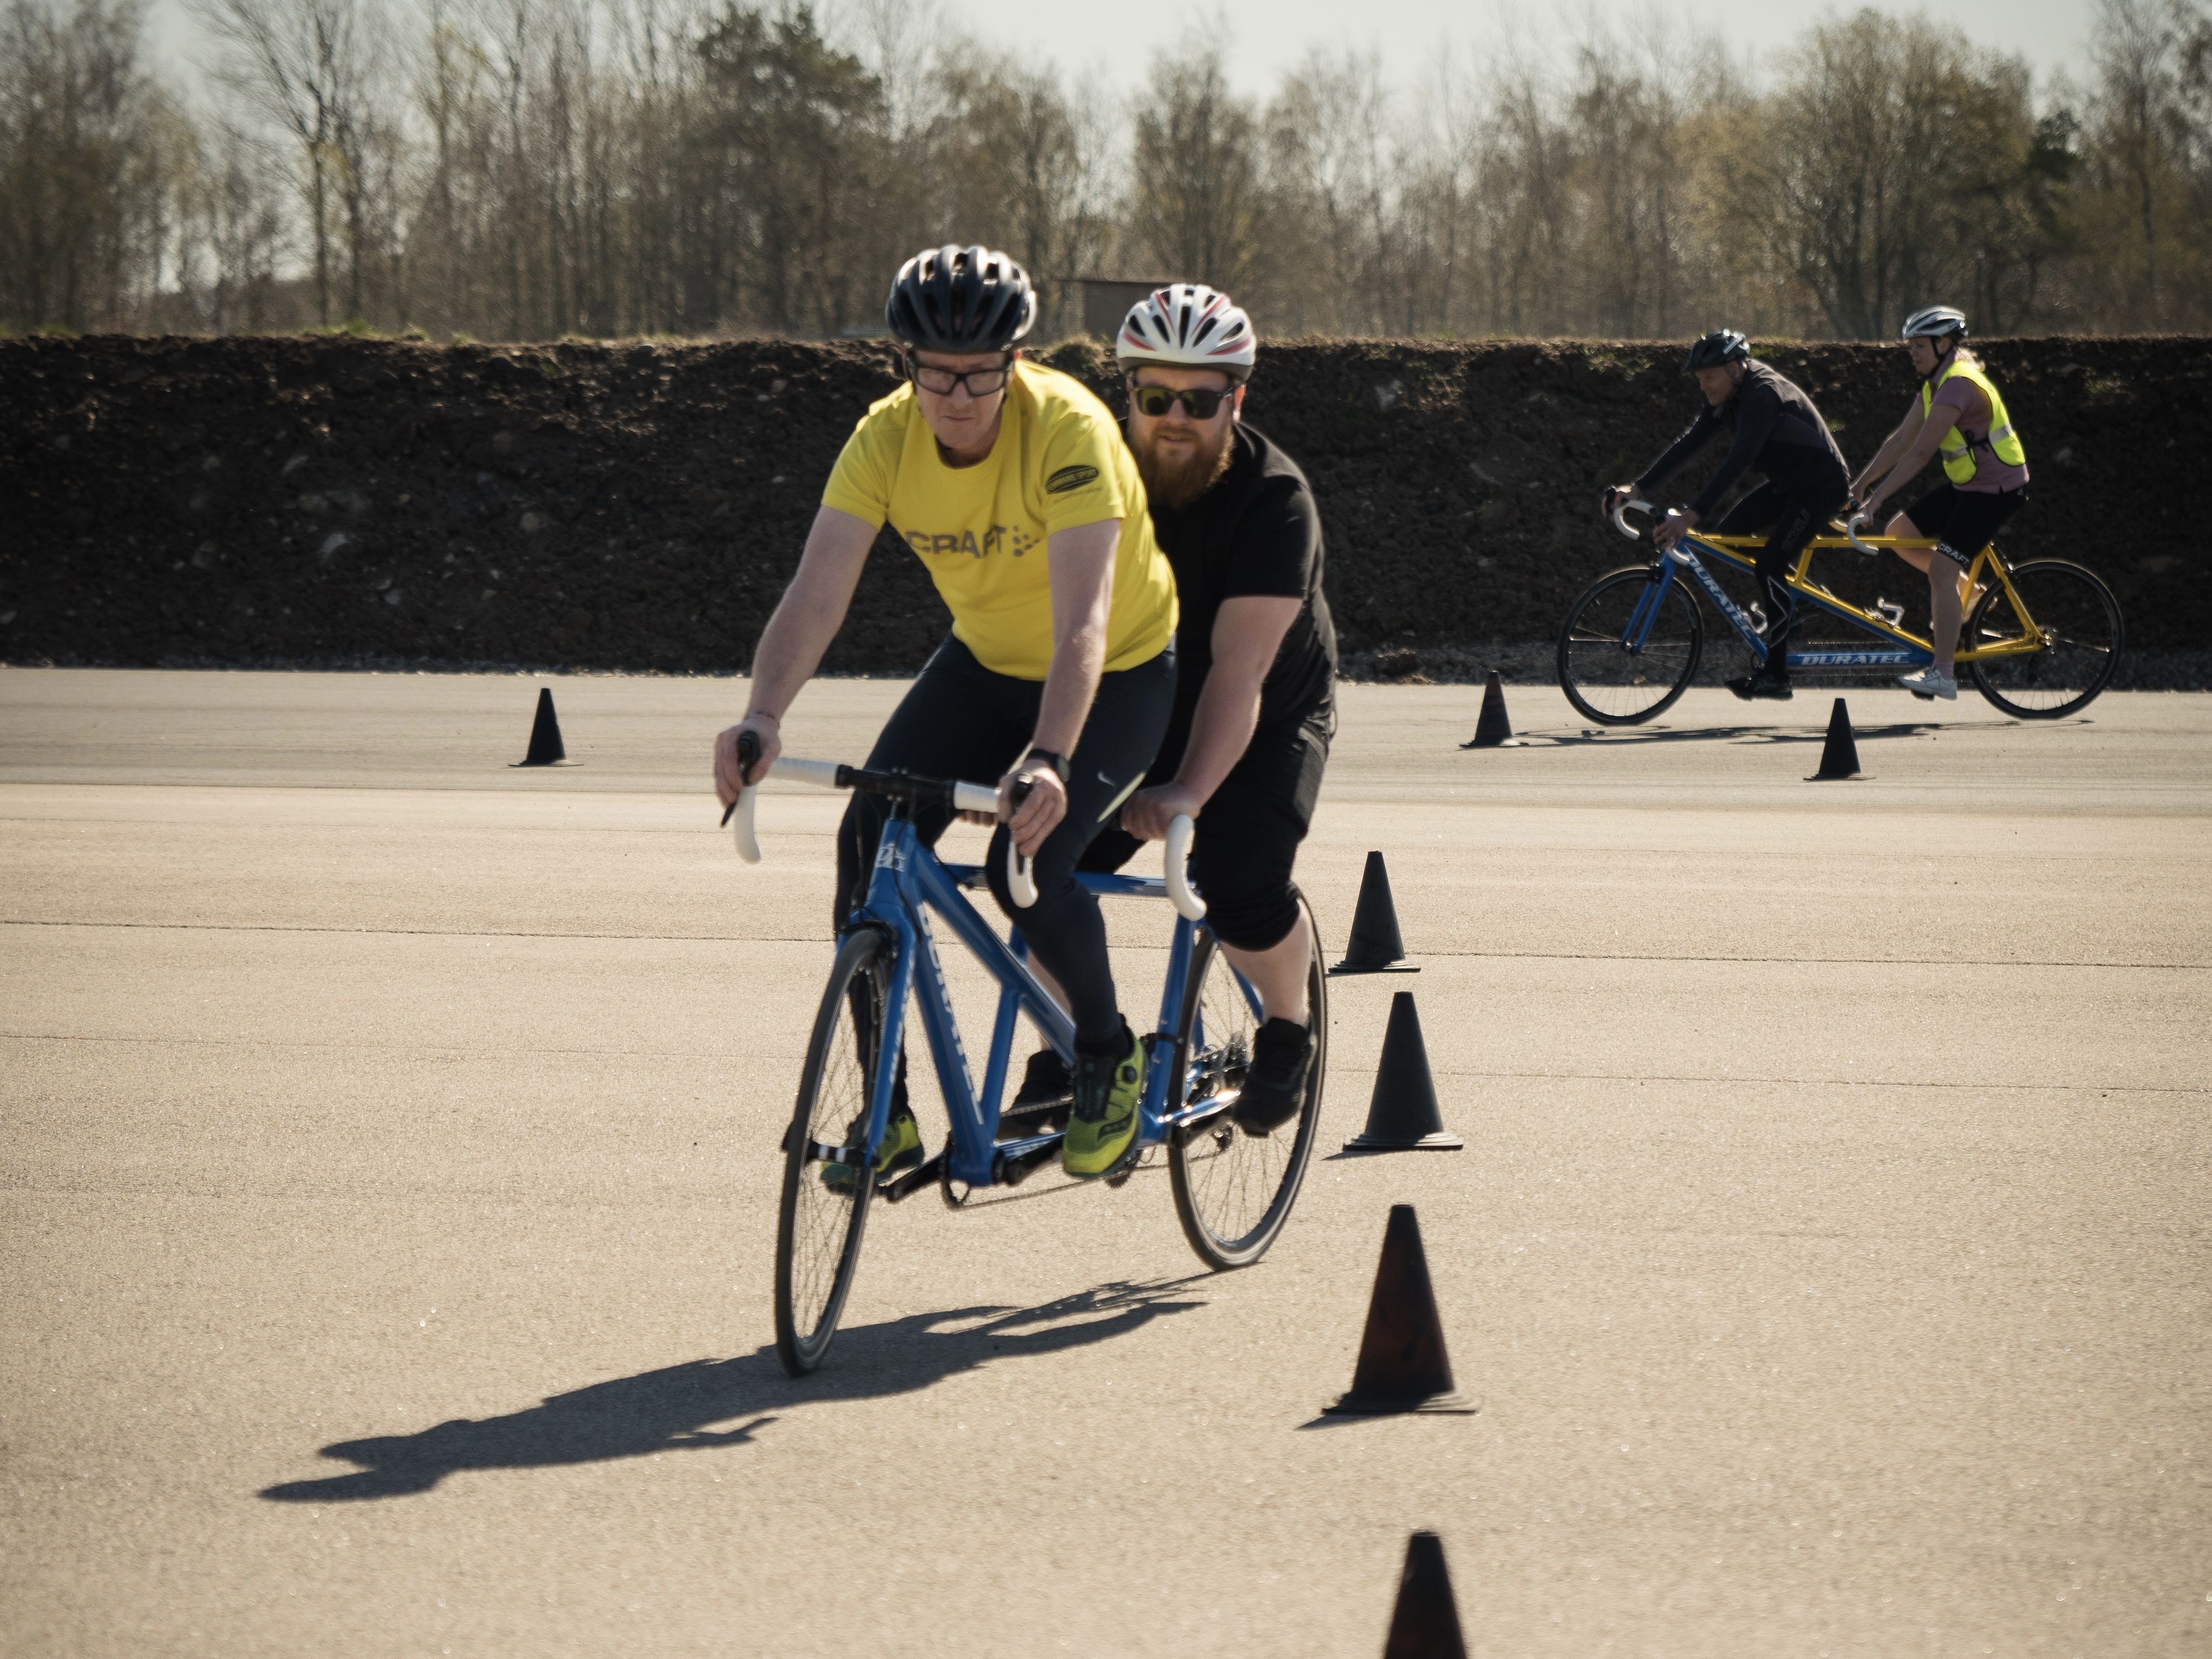 Att utbilda sig till tandempilot innebär att fler synskadade kan få chansen att börja cykla. Här utbildas piloter på Falkenbergs motorbana.